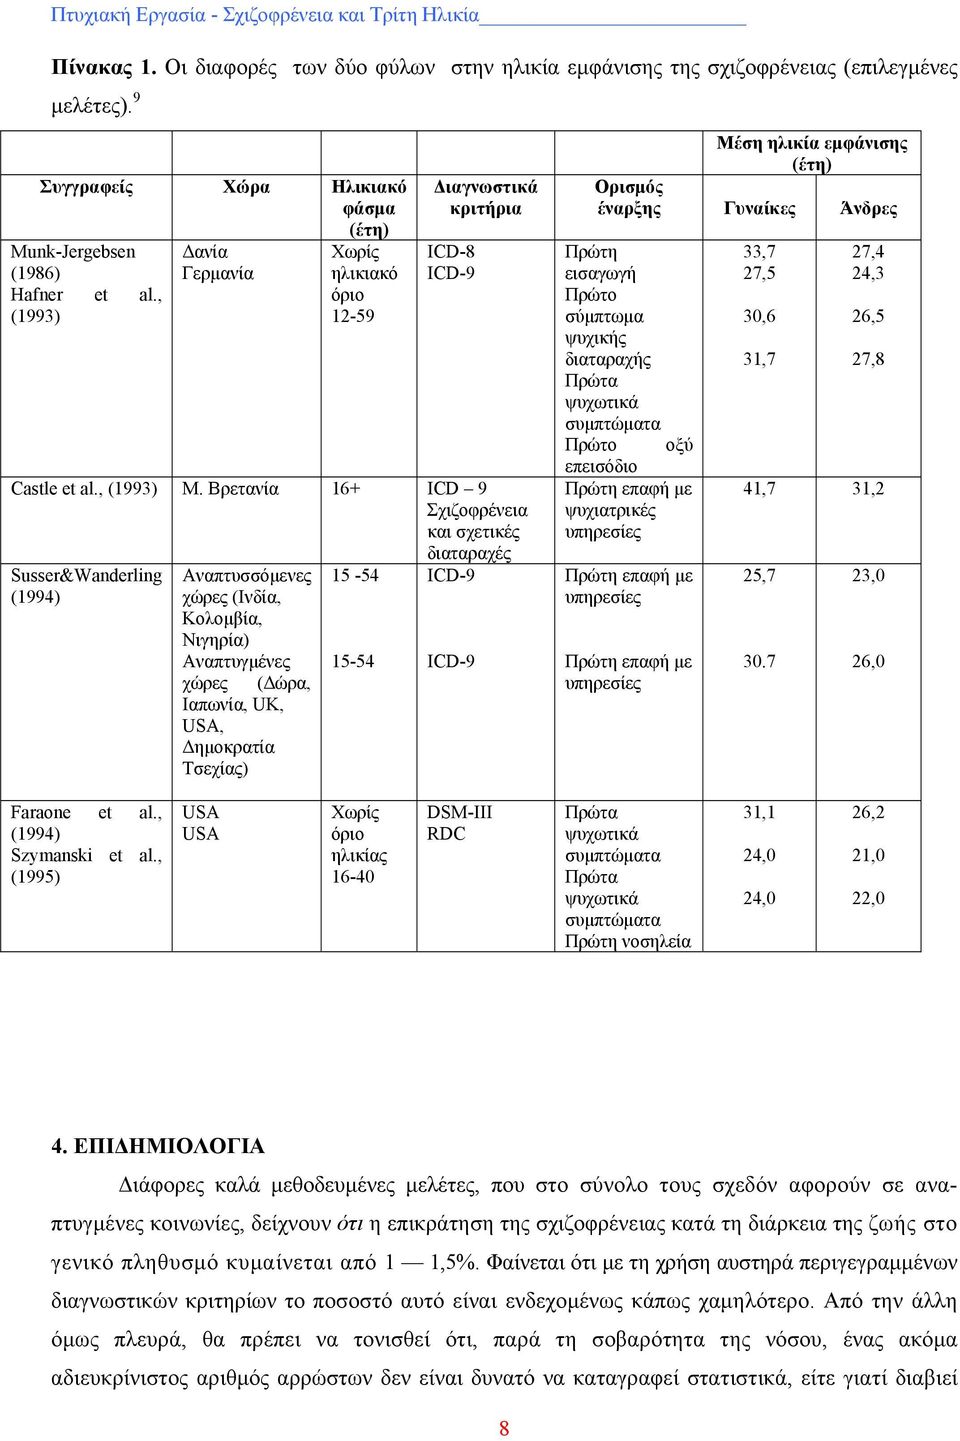 Βρετανία 16+ ICD 9 Σχιζοφρένεια και σχετικές διαταραχές Susser&Wanderling (1994) Αναπτυσσόμενες χώρες (Ινδία, Κολομβία, Νιγηρία) Αναπτυγμένες χώρες Ιαπωνία, UK, USA, Δημοκρατία Τσεχίας) (Δώρα, 15-54